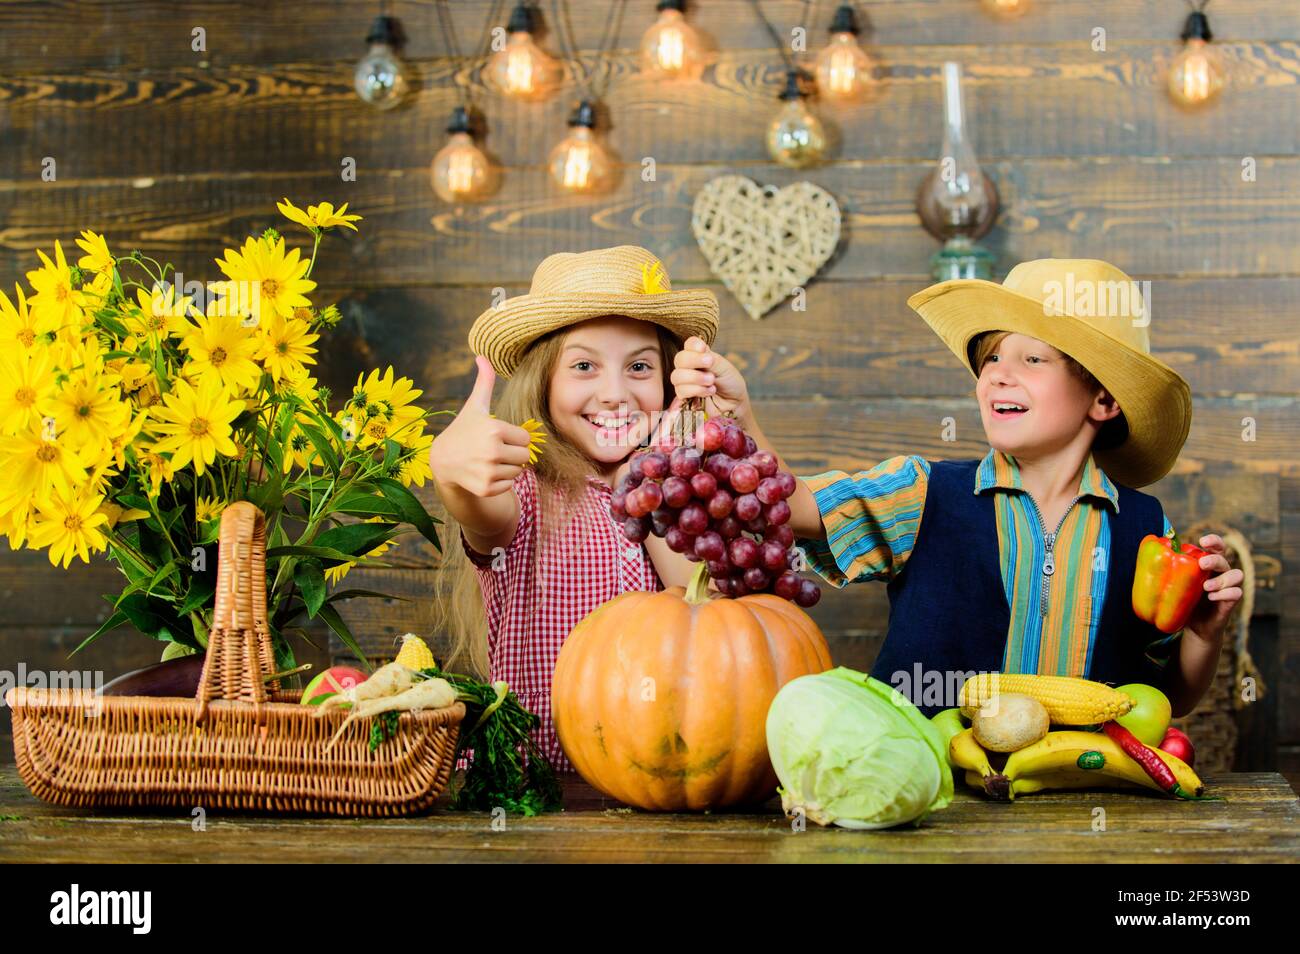 Idea del festival de otoño de la escuela primaria. Festival de la cosecha  de otoño. Los niños juegan a las verduras calabaza. Niños niña niño vestir  vaquero granjero estilo sombrero celebrar Fotografía